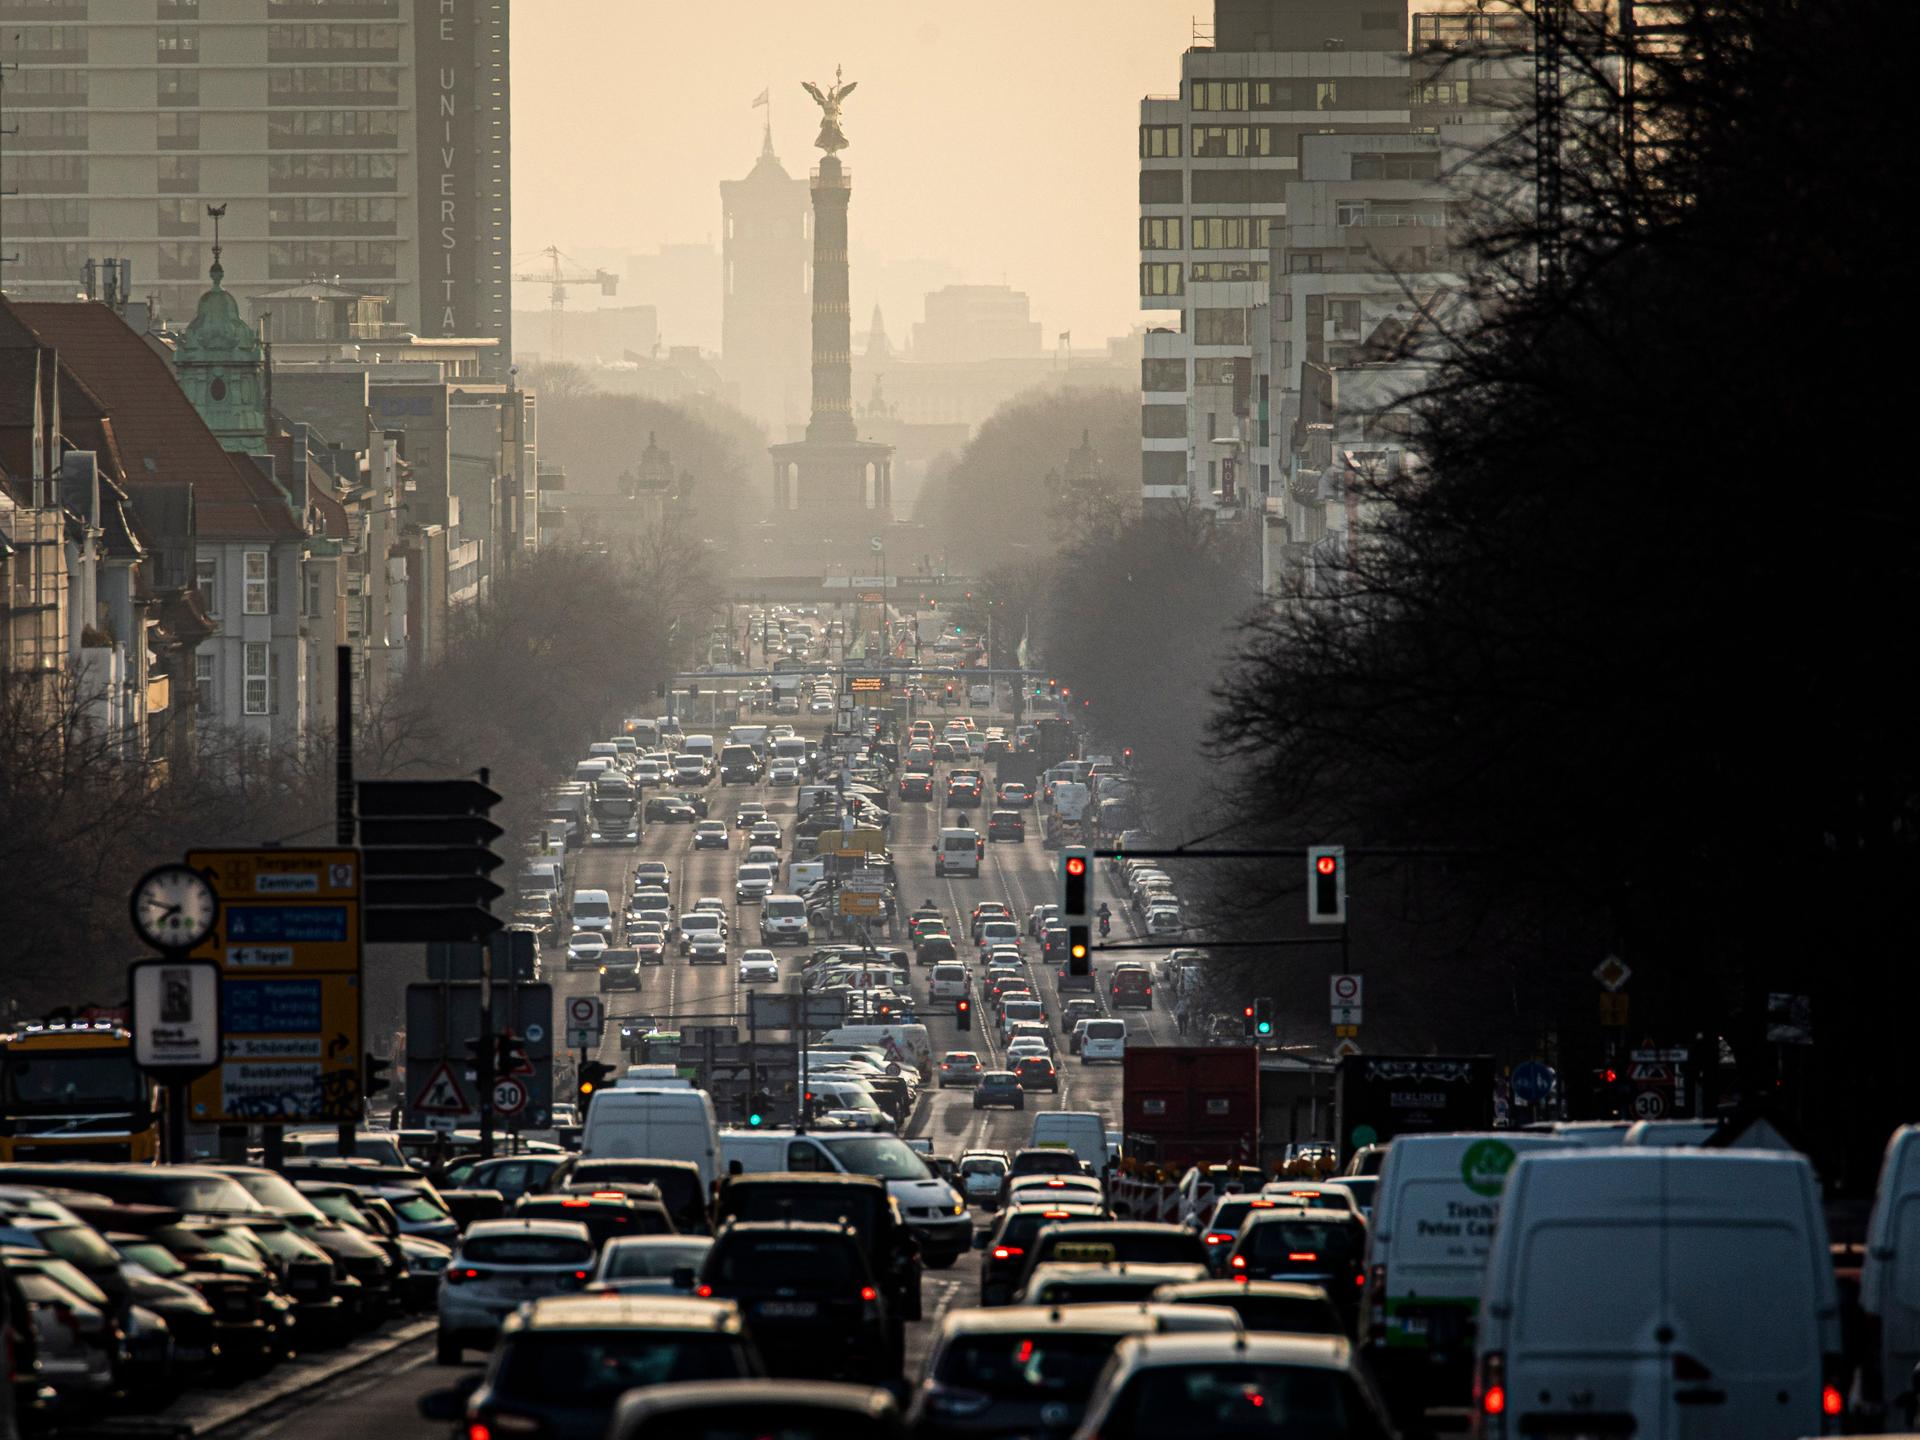 Verkehr in den Morgenstunden auf der Bismarckstrasse in Berlin: Die Straße ist bis zum Horizont von Autos verstopft.